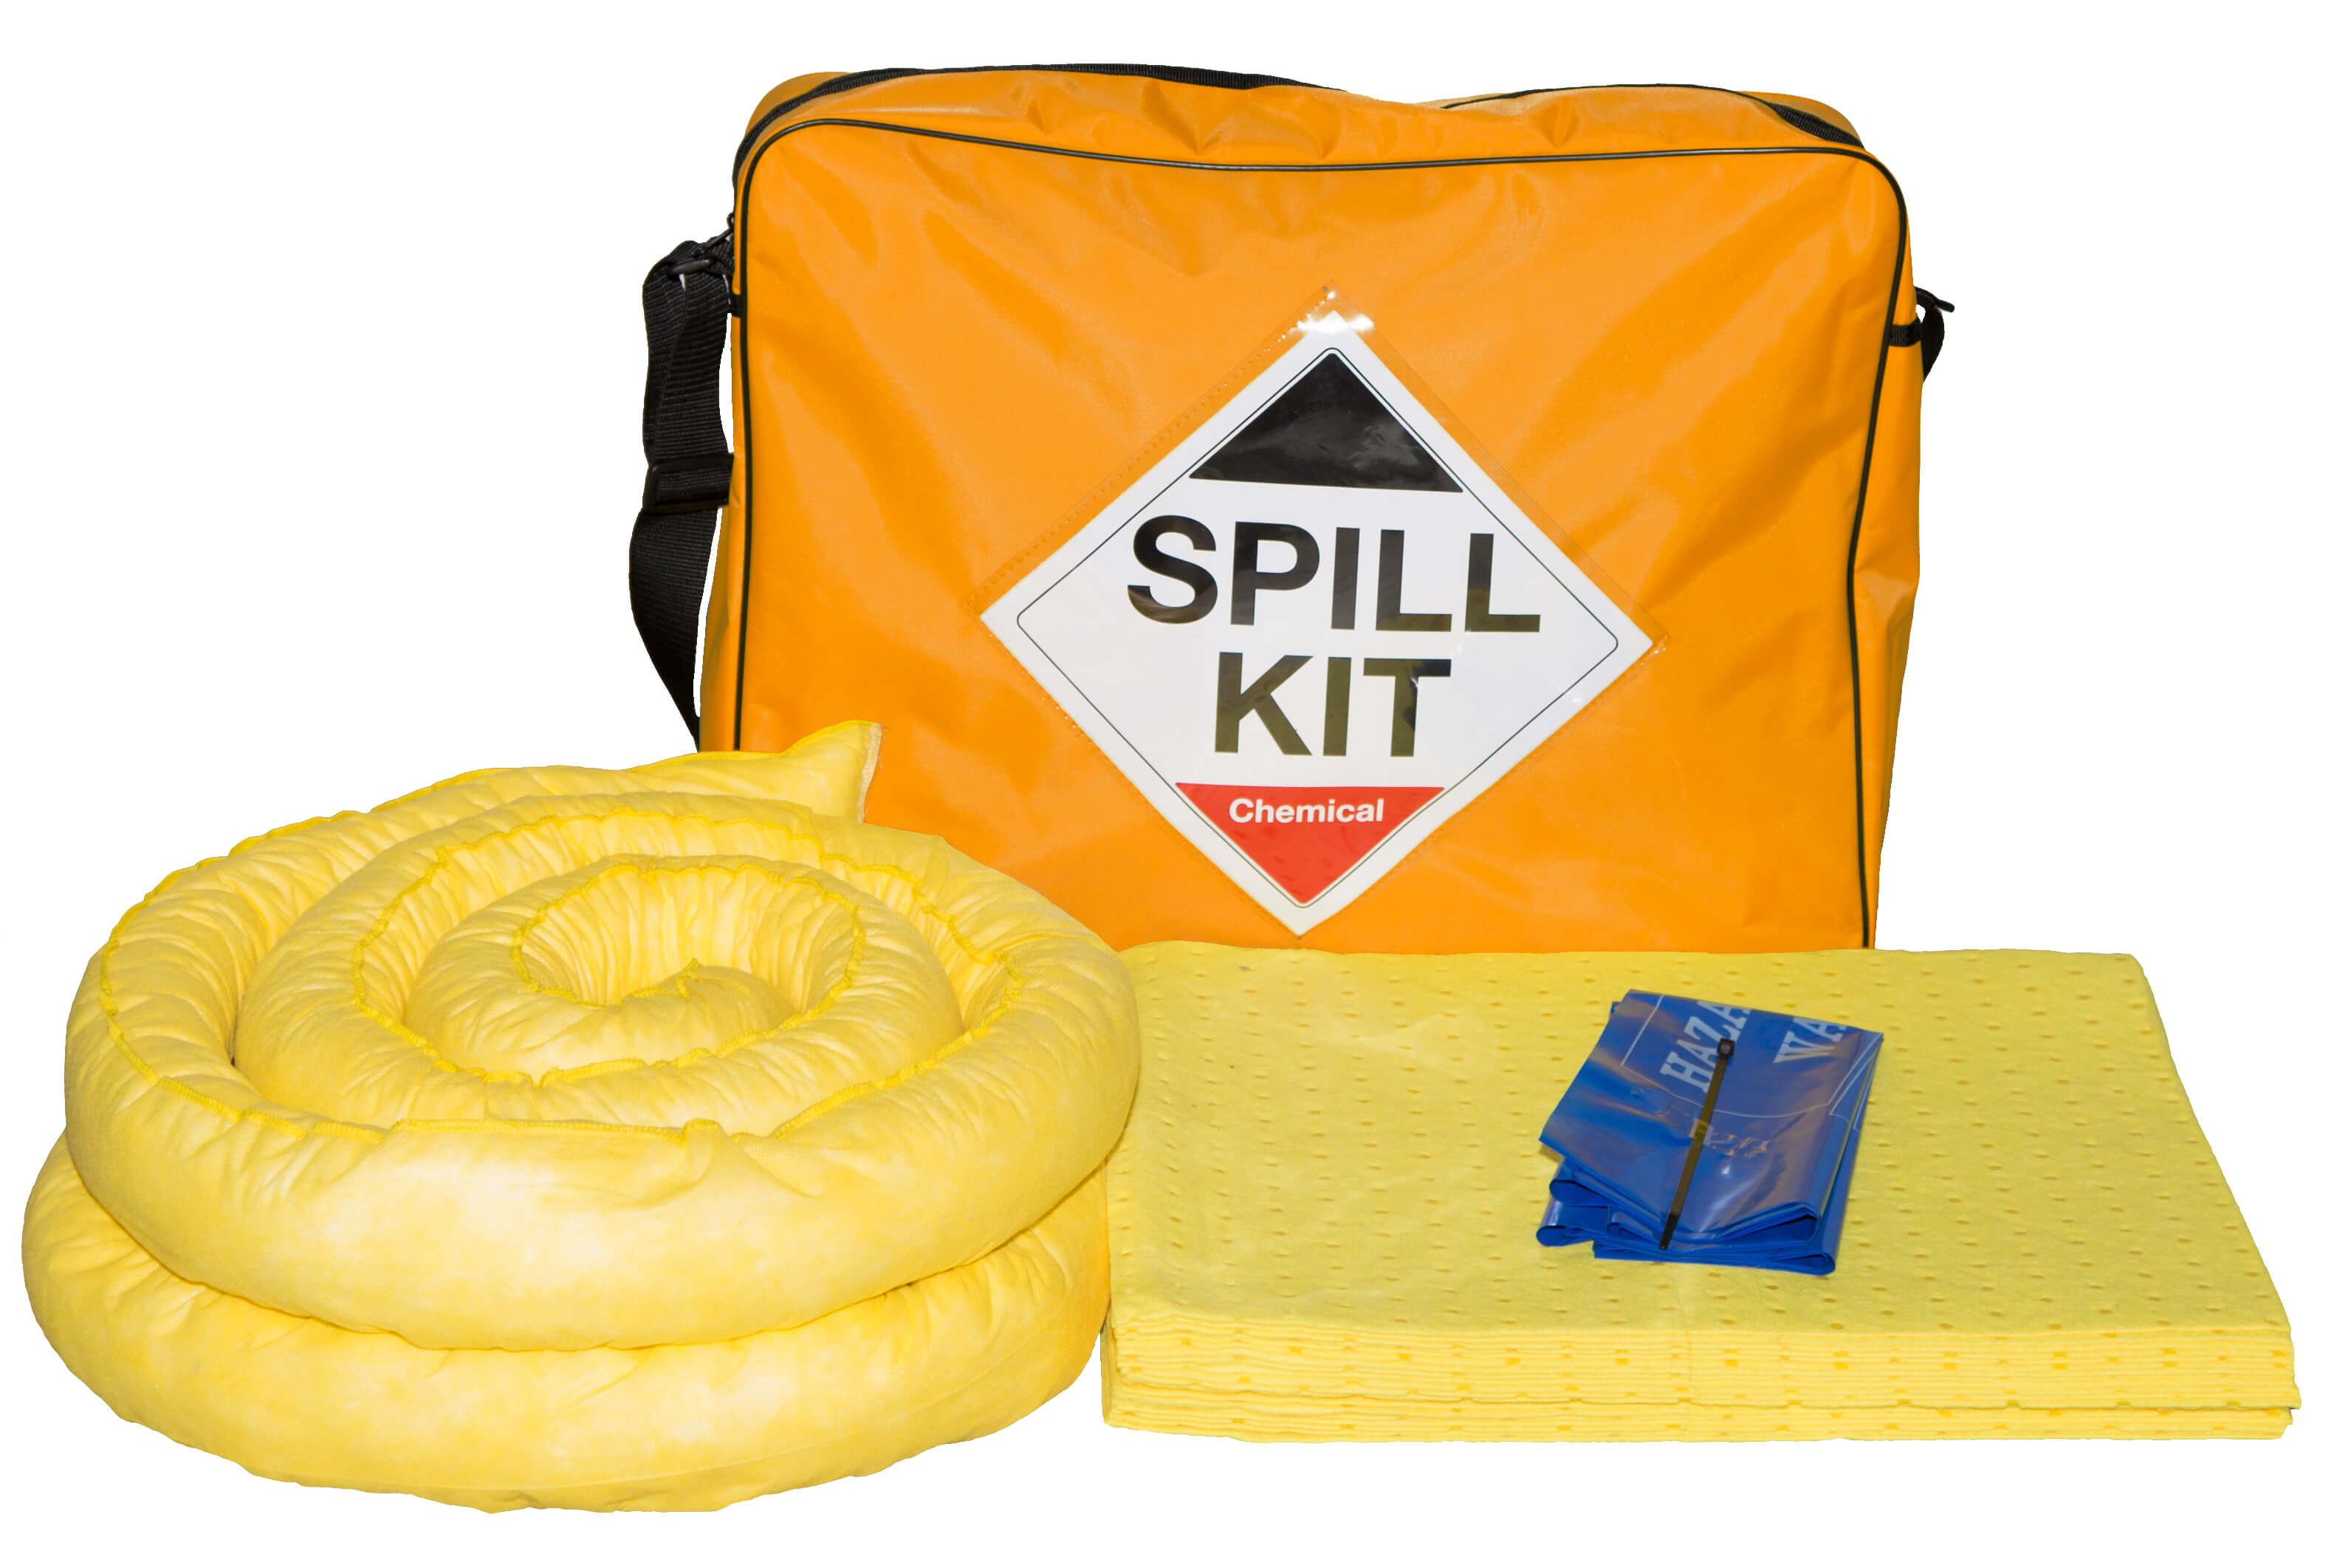 Chemical Kit in Orange PVC  Bag